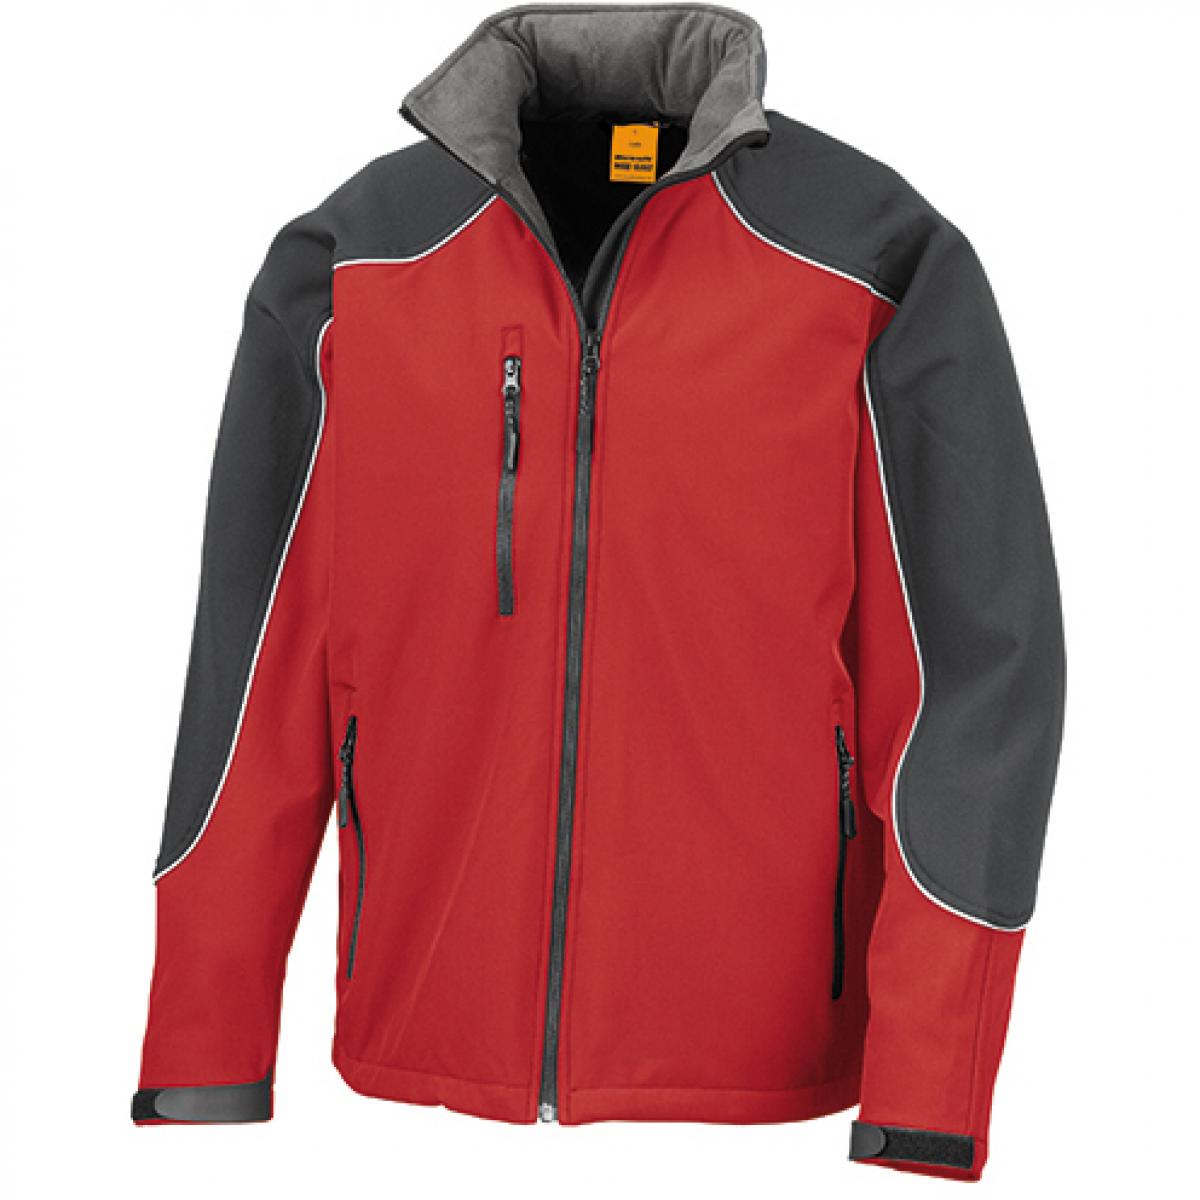 Hersteller: Result WORK-GUARD Herstellernummer: R118X Artikelbezeichnung: Ice Fell Hooded Soft Shell Jacke Farbe: Red/Black